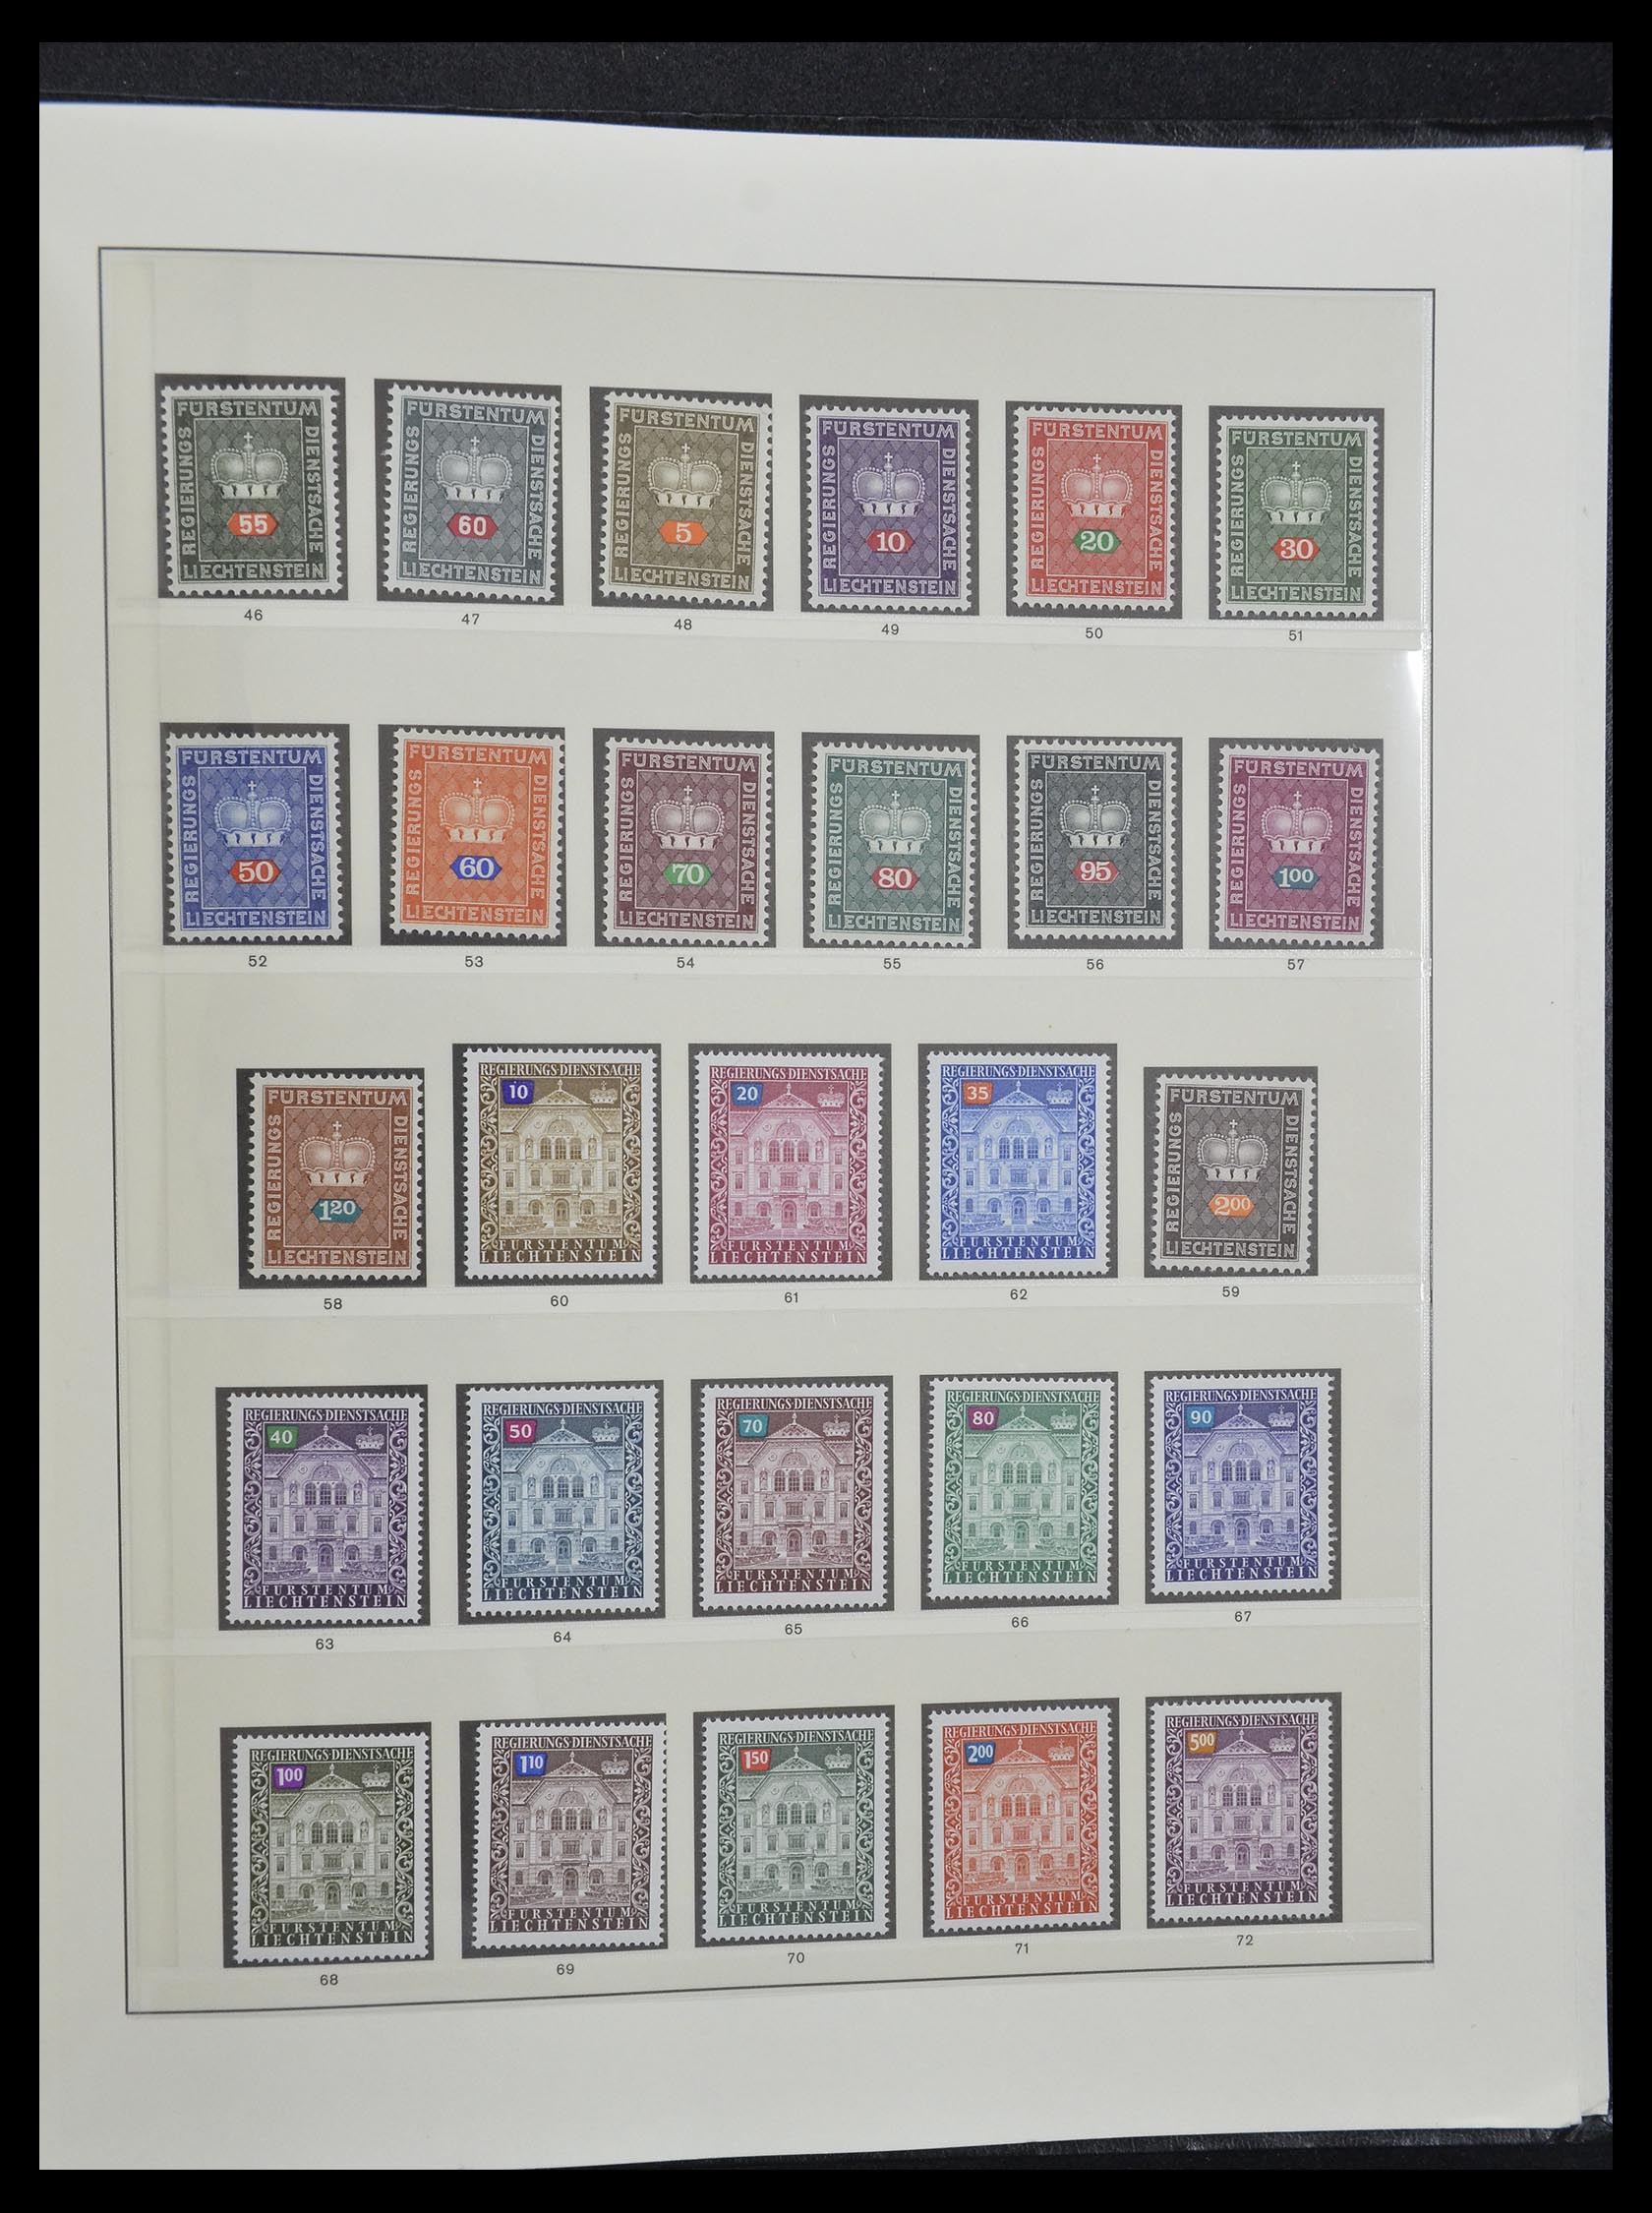 33140 055 - Stamp collection 33140 Liechtenstein 1912-1990.